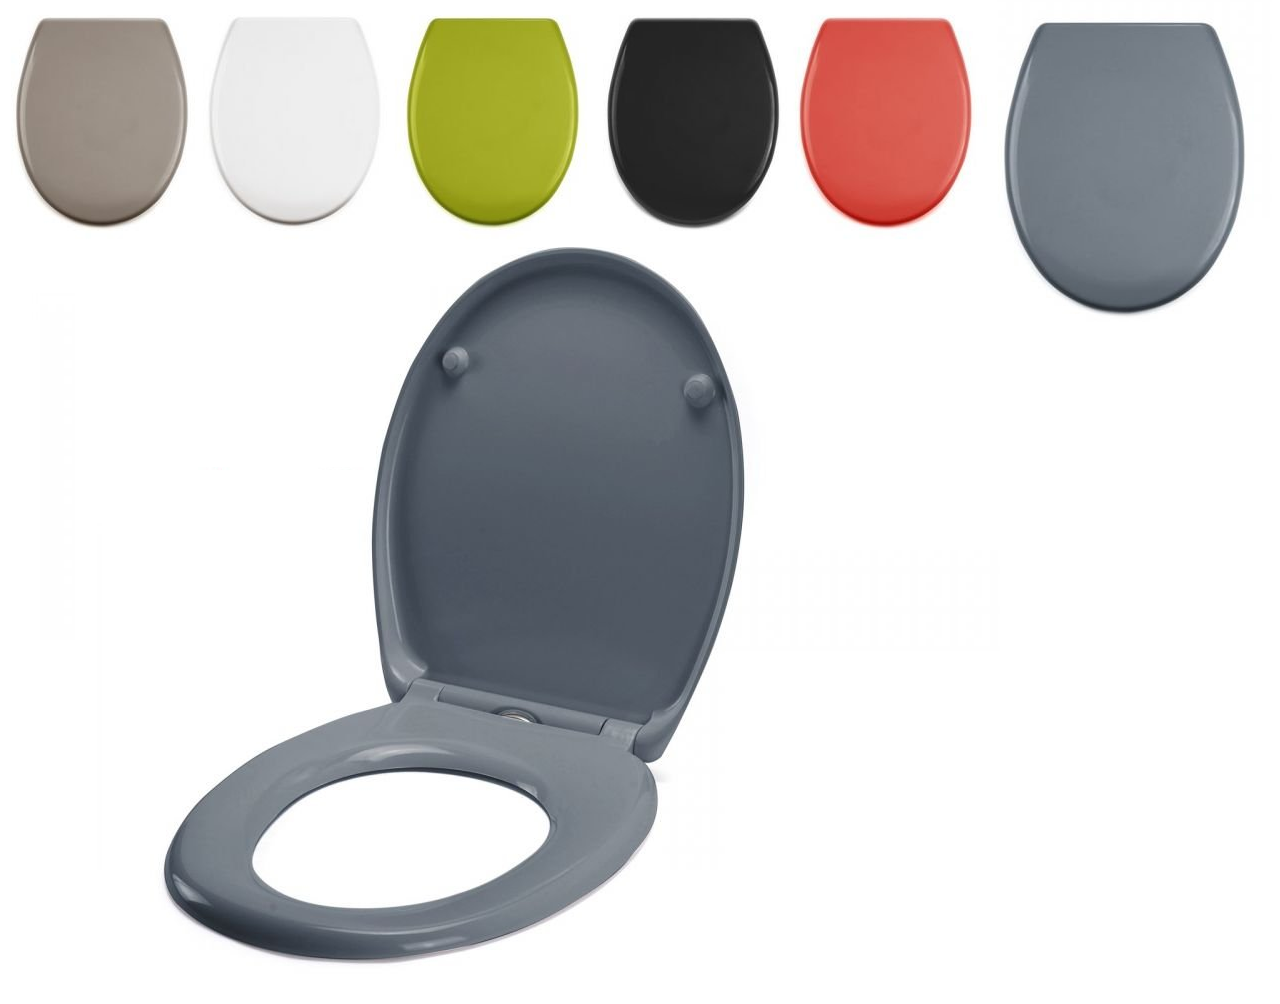 Colores en asientos de inodoro - Encuentra tu Tapa de WC - Disper